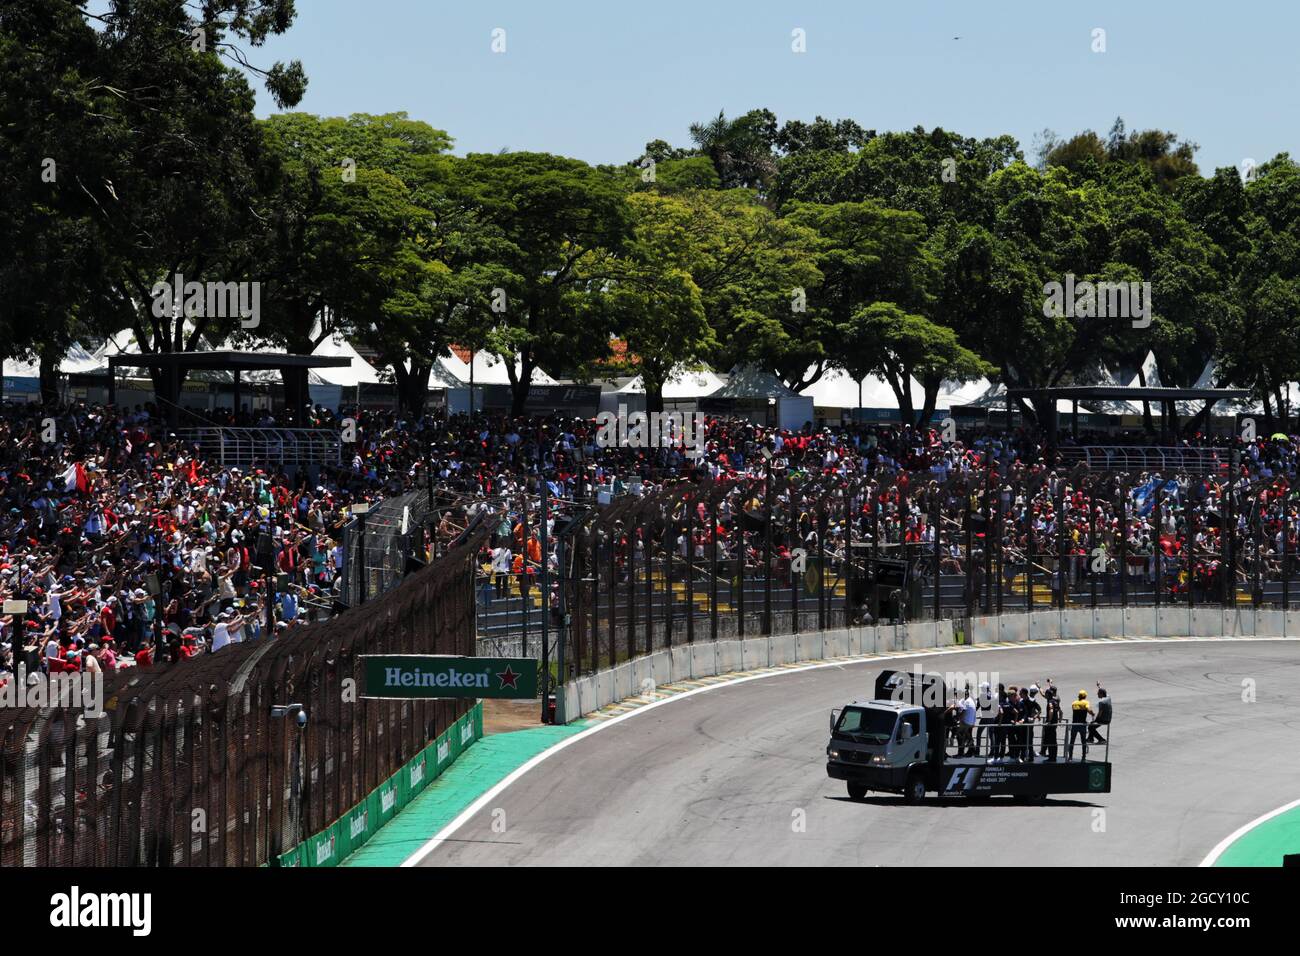 Les pilotes défilent. Grand Prix brésilien, dimanche 12 novembre 2017. Sao Paulo, Brésil. Banque D'Images